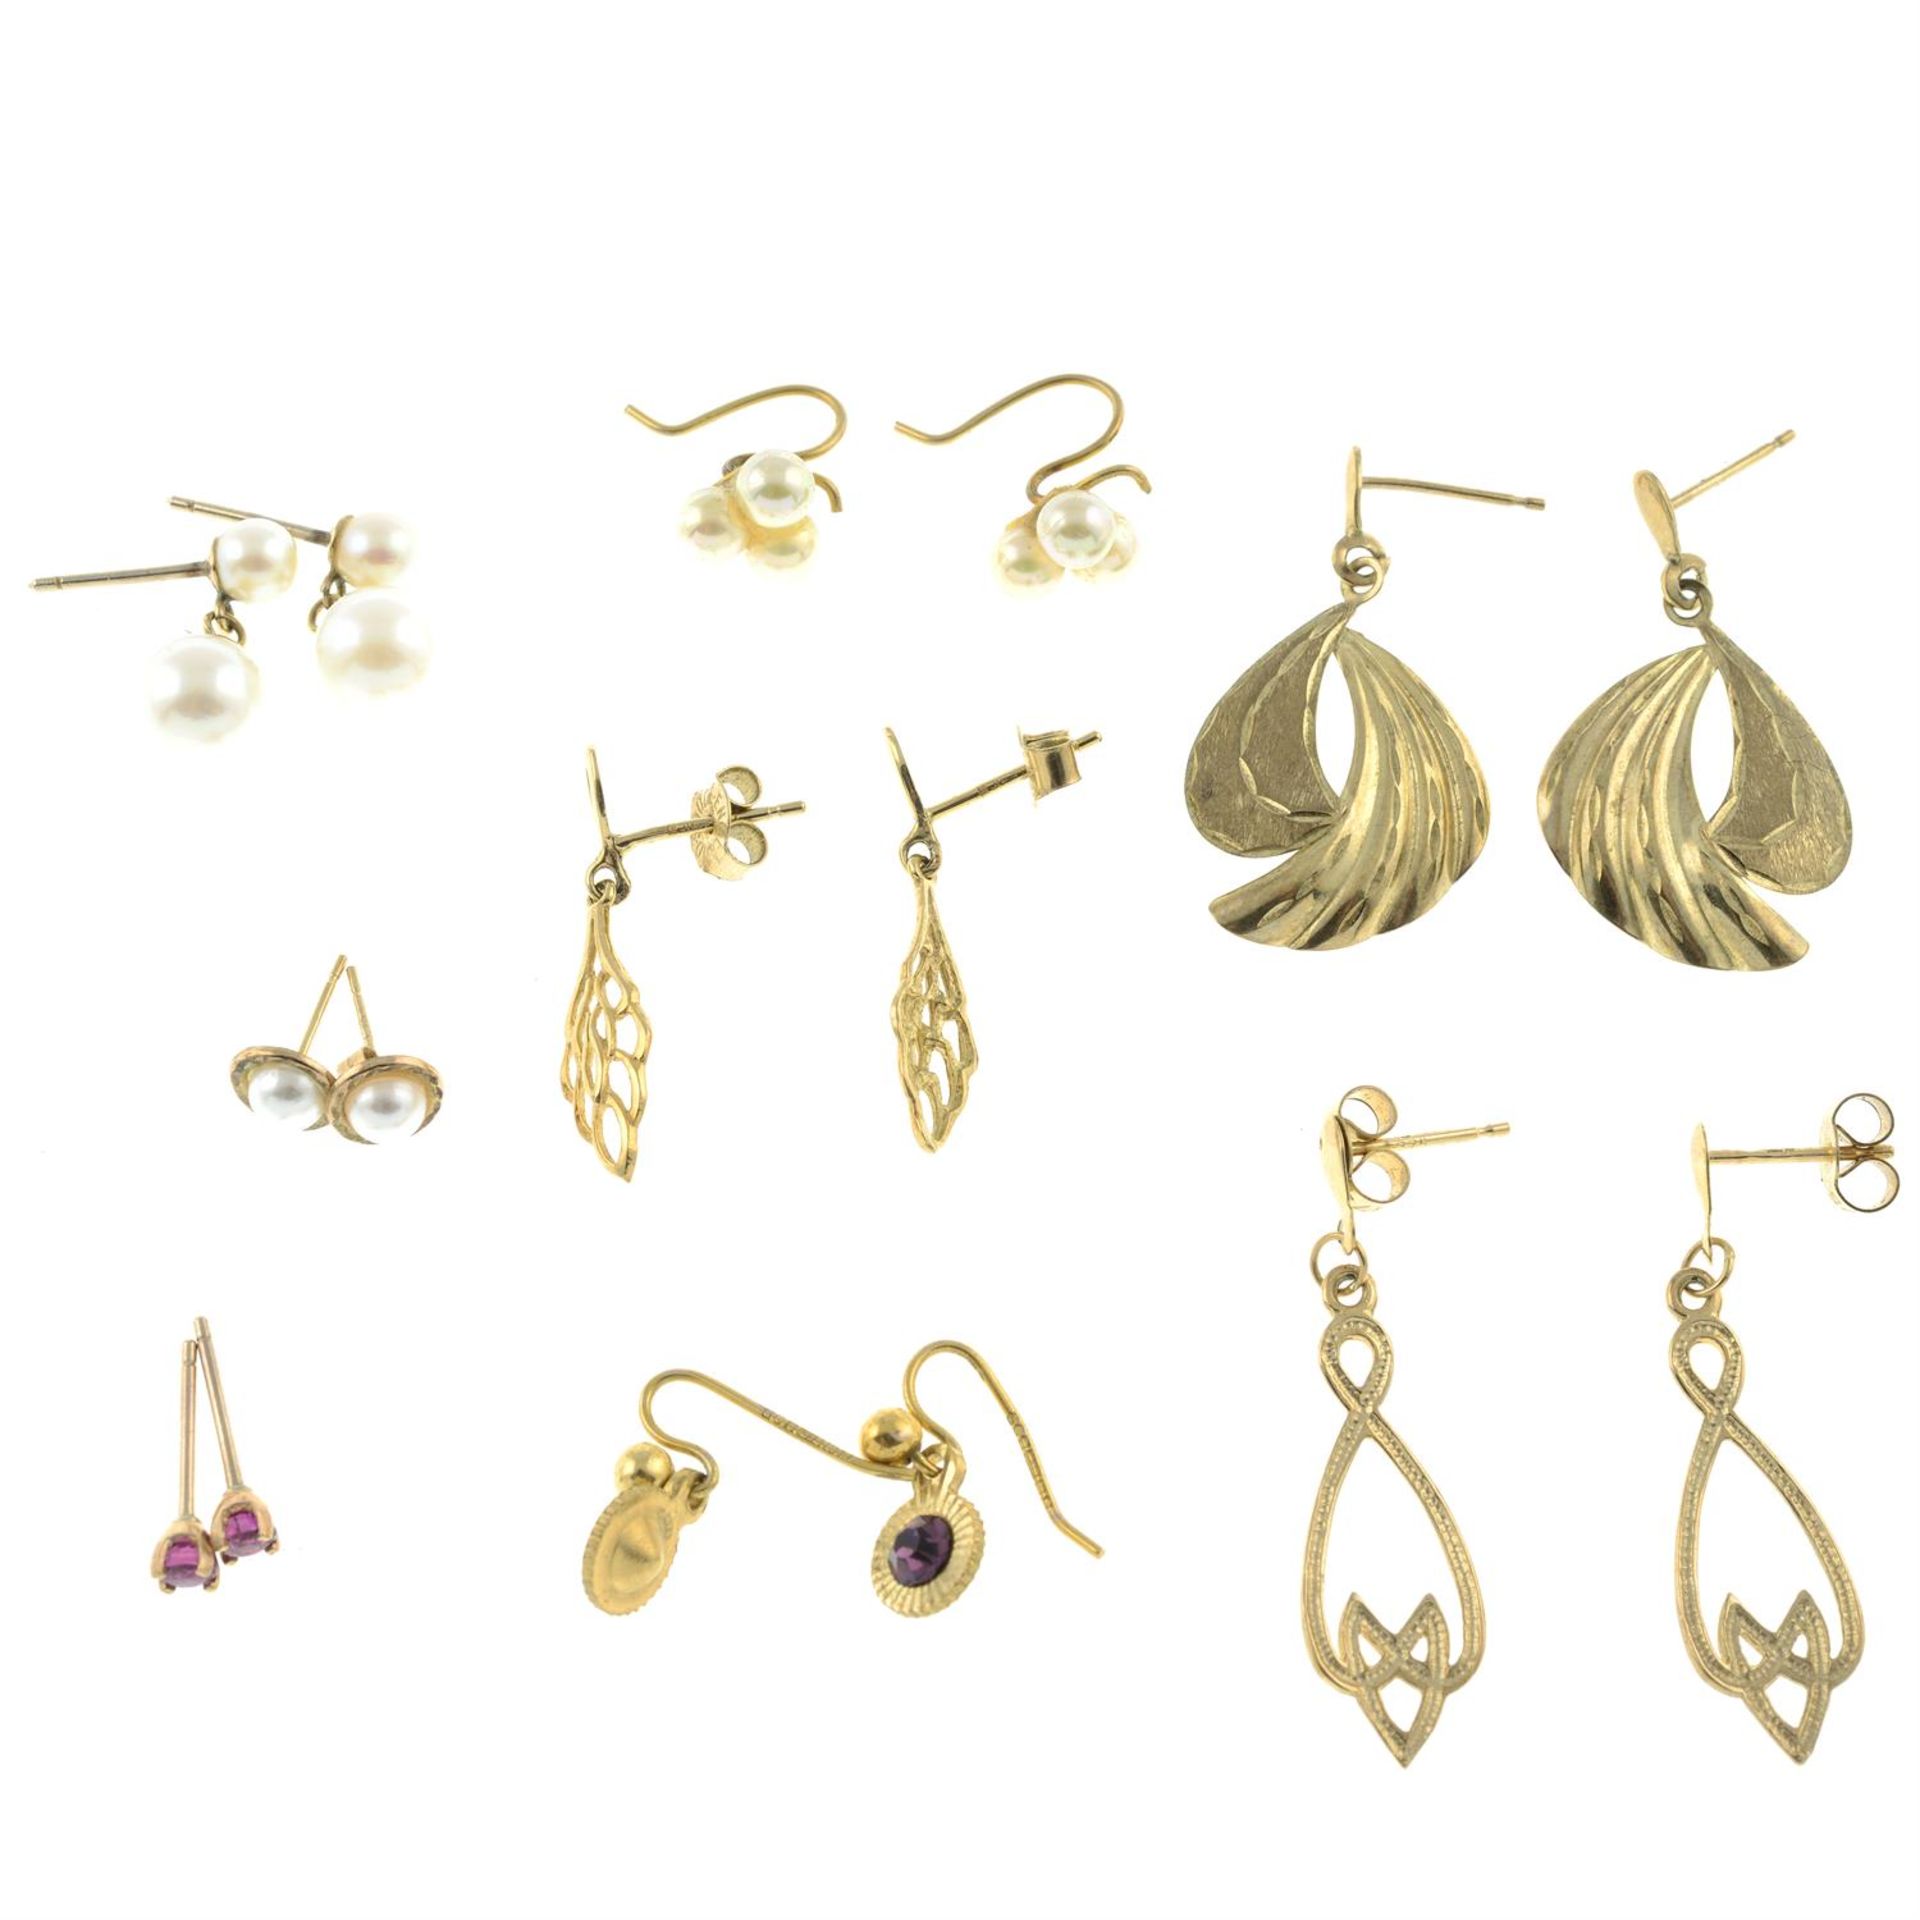 Eight pairs of earrings.